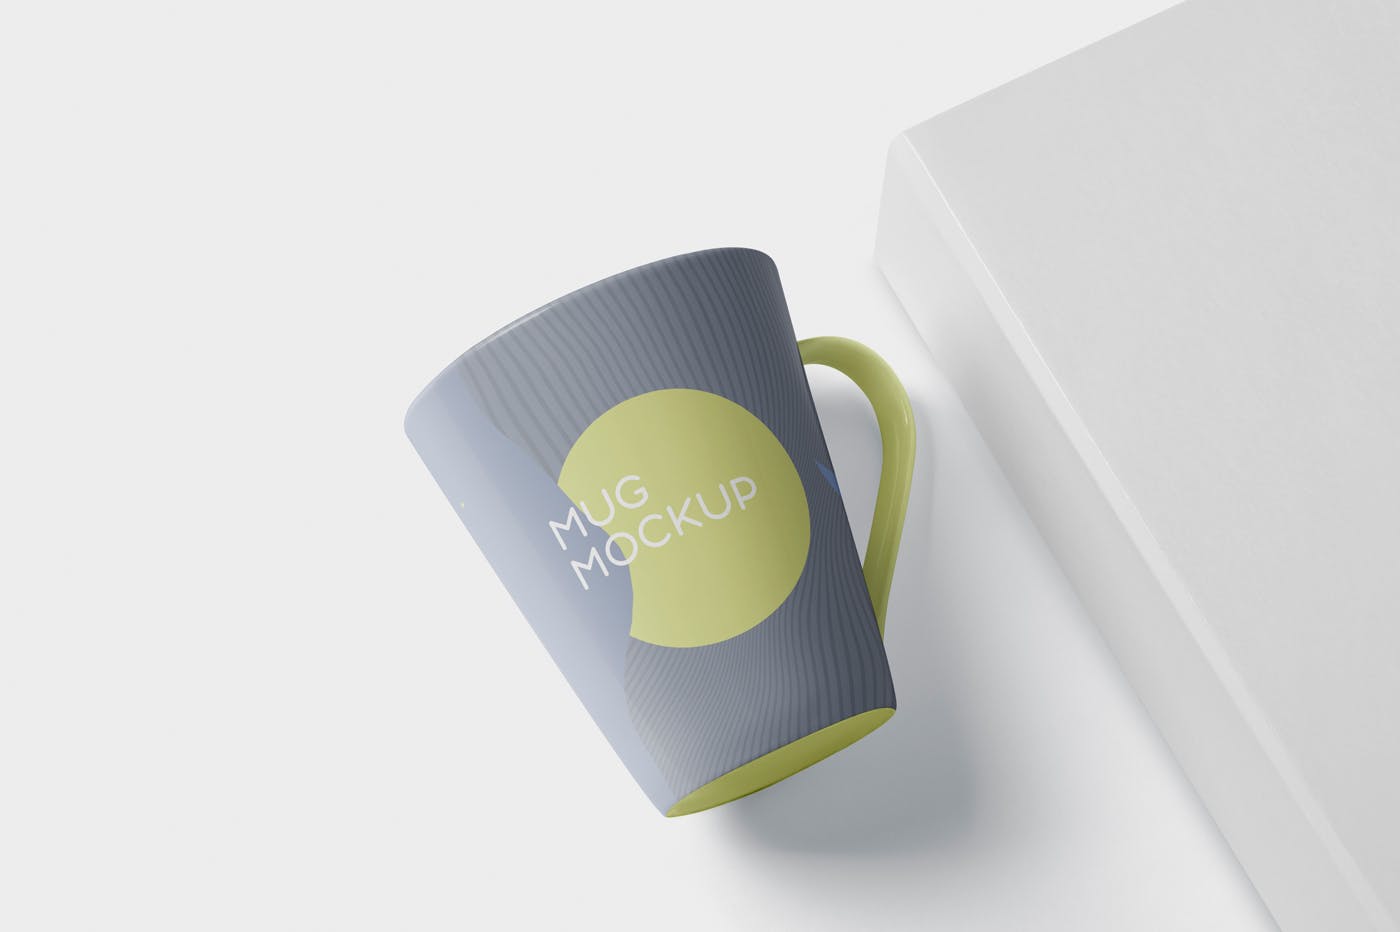 锥形马克杯图案设计蚂蚁素材精选 Mug Mockup – Cone Shaped插图(4)